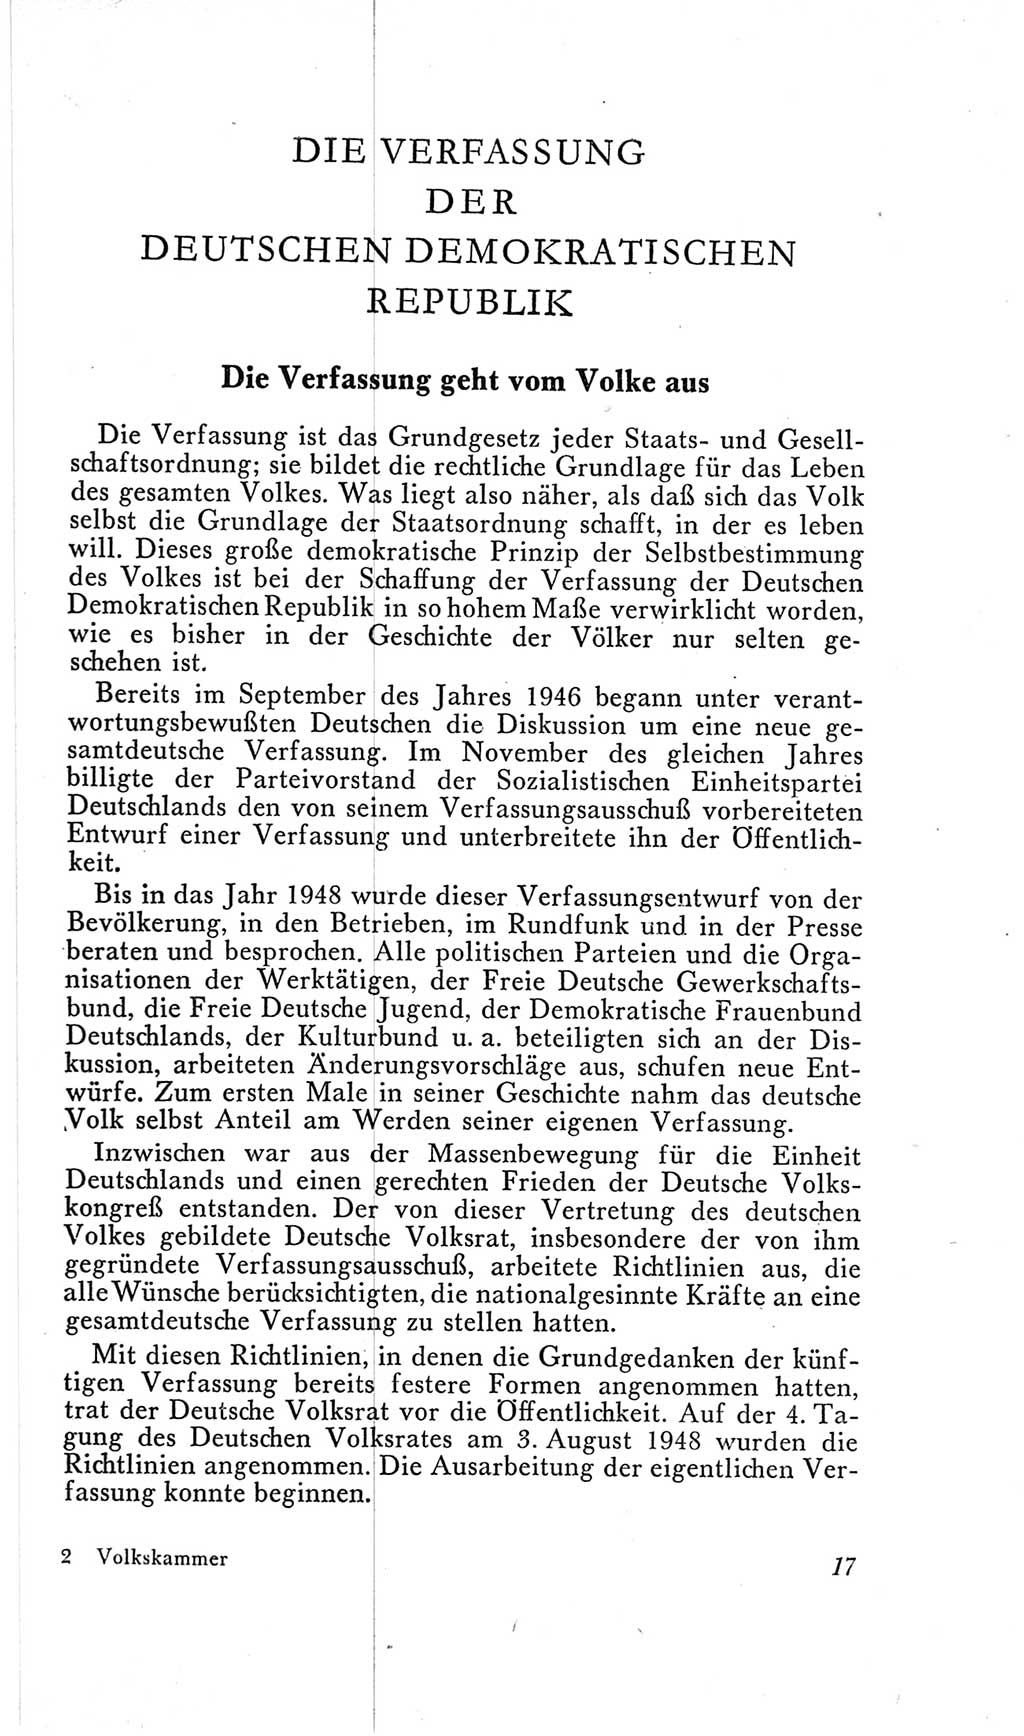 Handbuch der Volkskammer (VK) der Deutschen Demokratischen Republik (DDR), 2. Wahlperiode 1954-1958, Seite 17 (Hdb. VK. DDR, 2. WP. 1954-1958, S. 17)